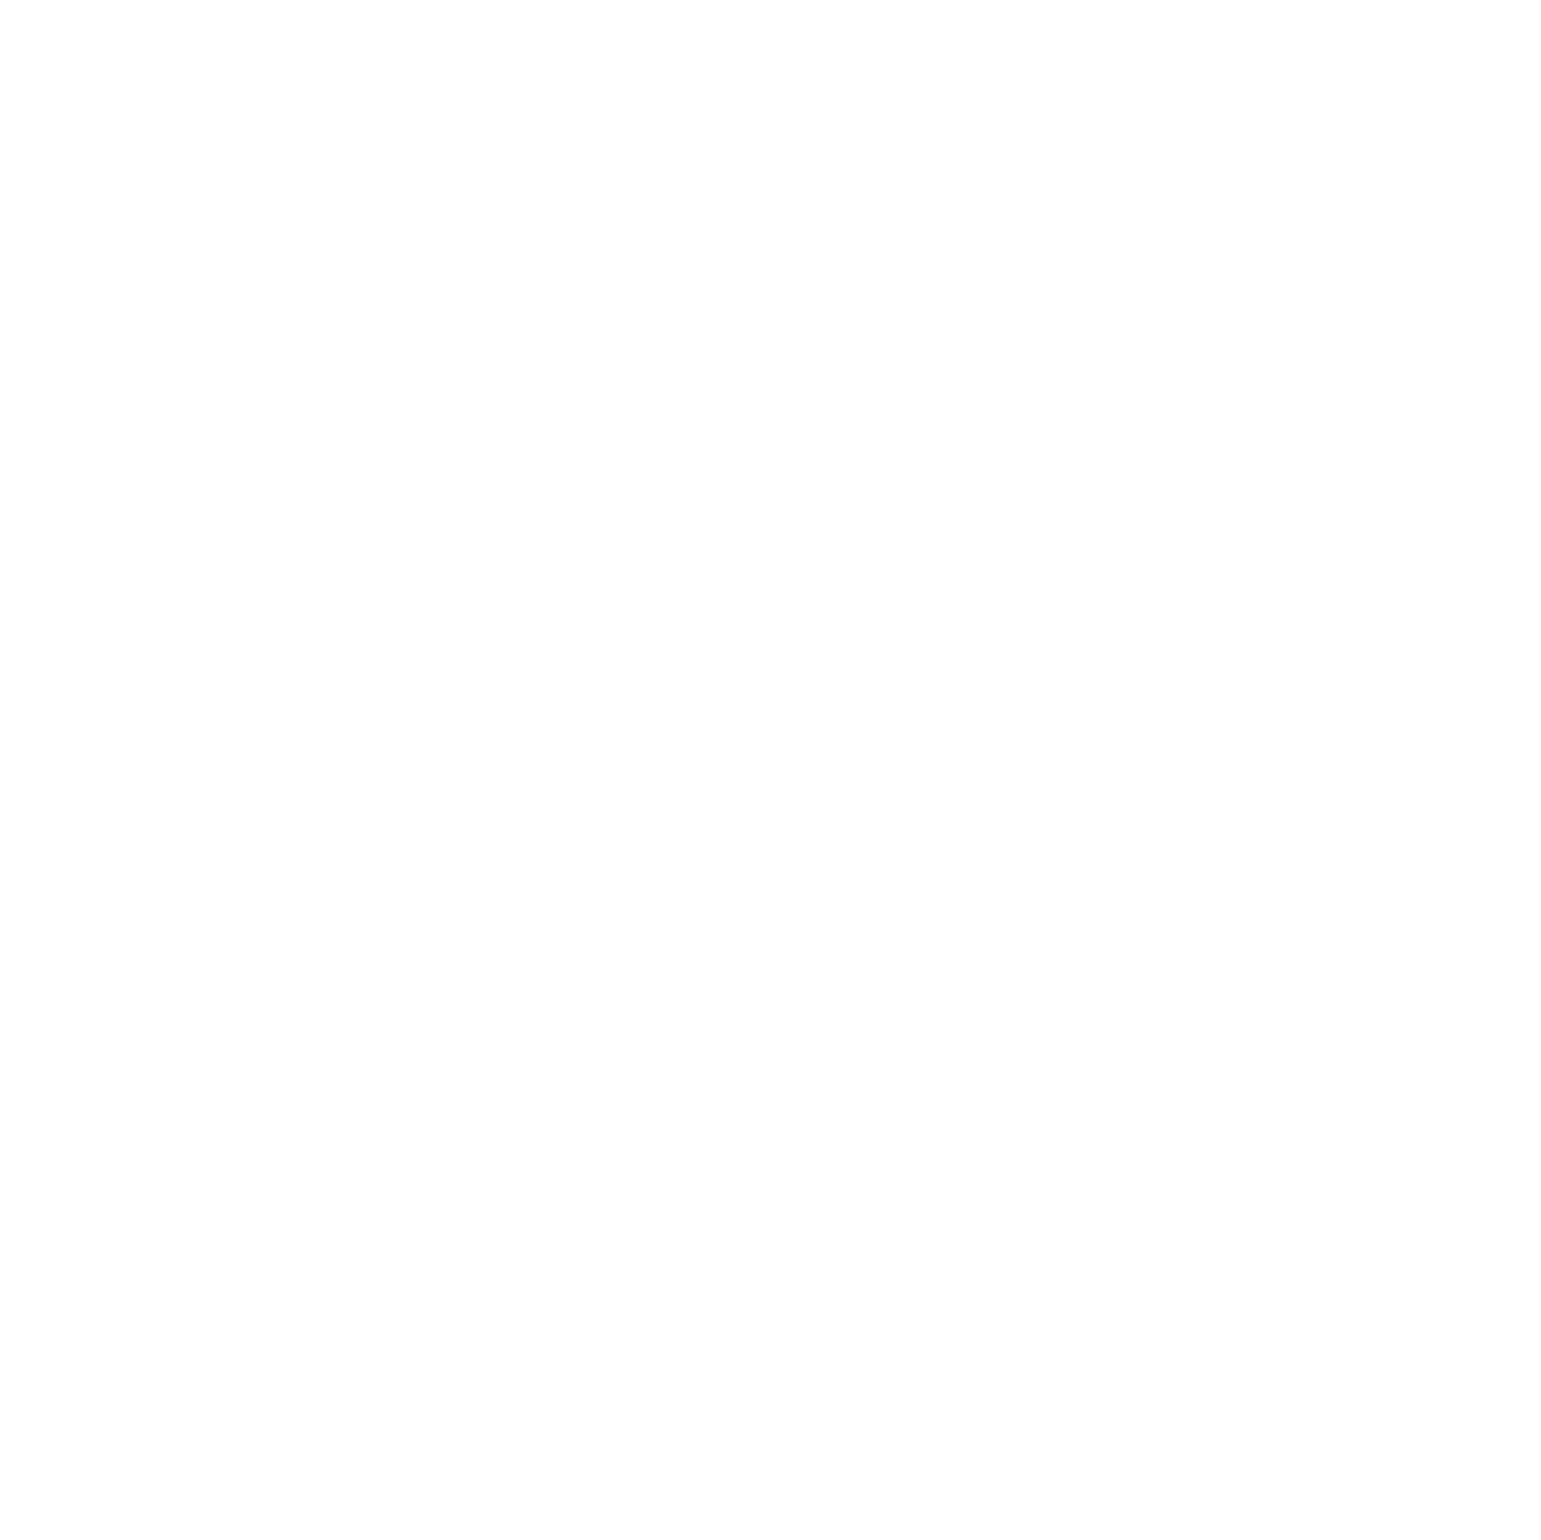 GE HealthCare Technologies logo pour fonds sombres (PNG transparent)